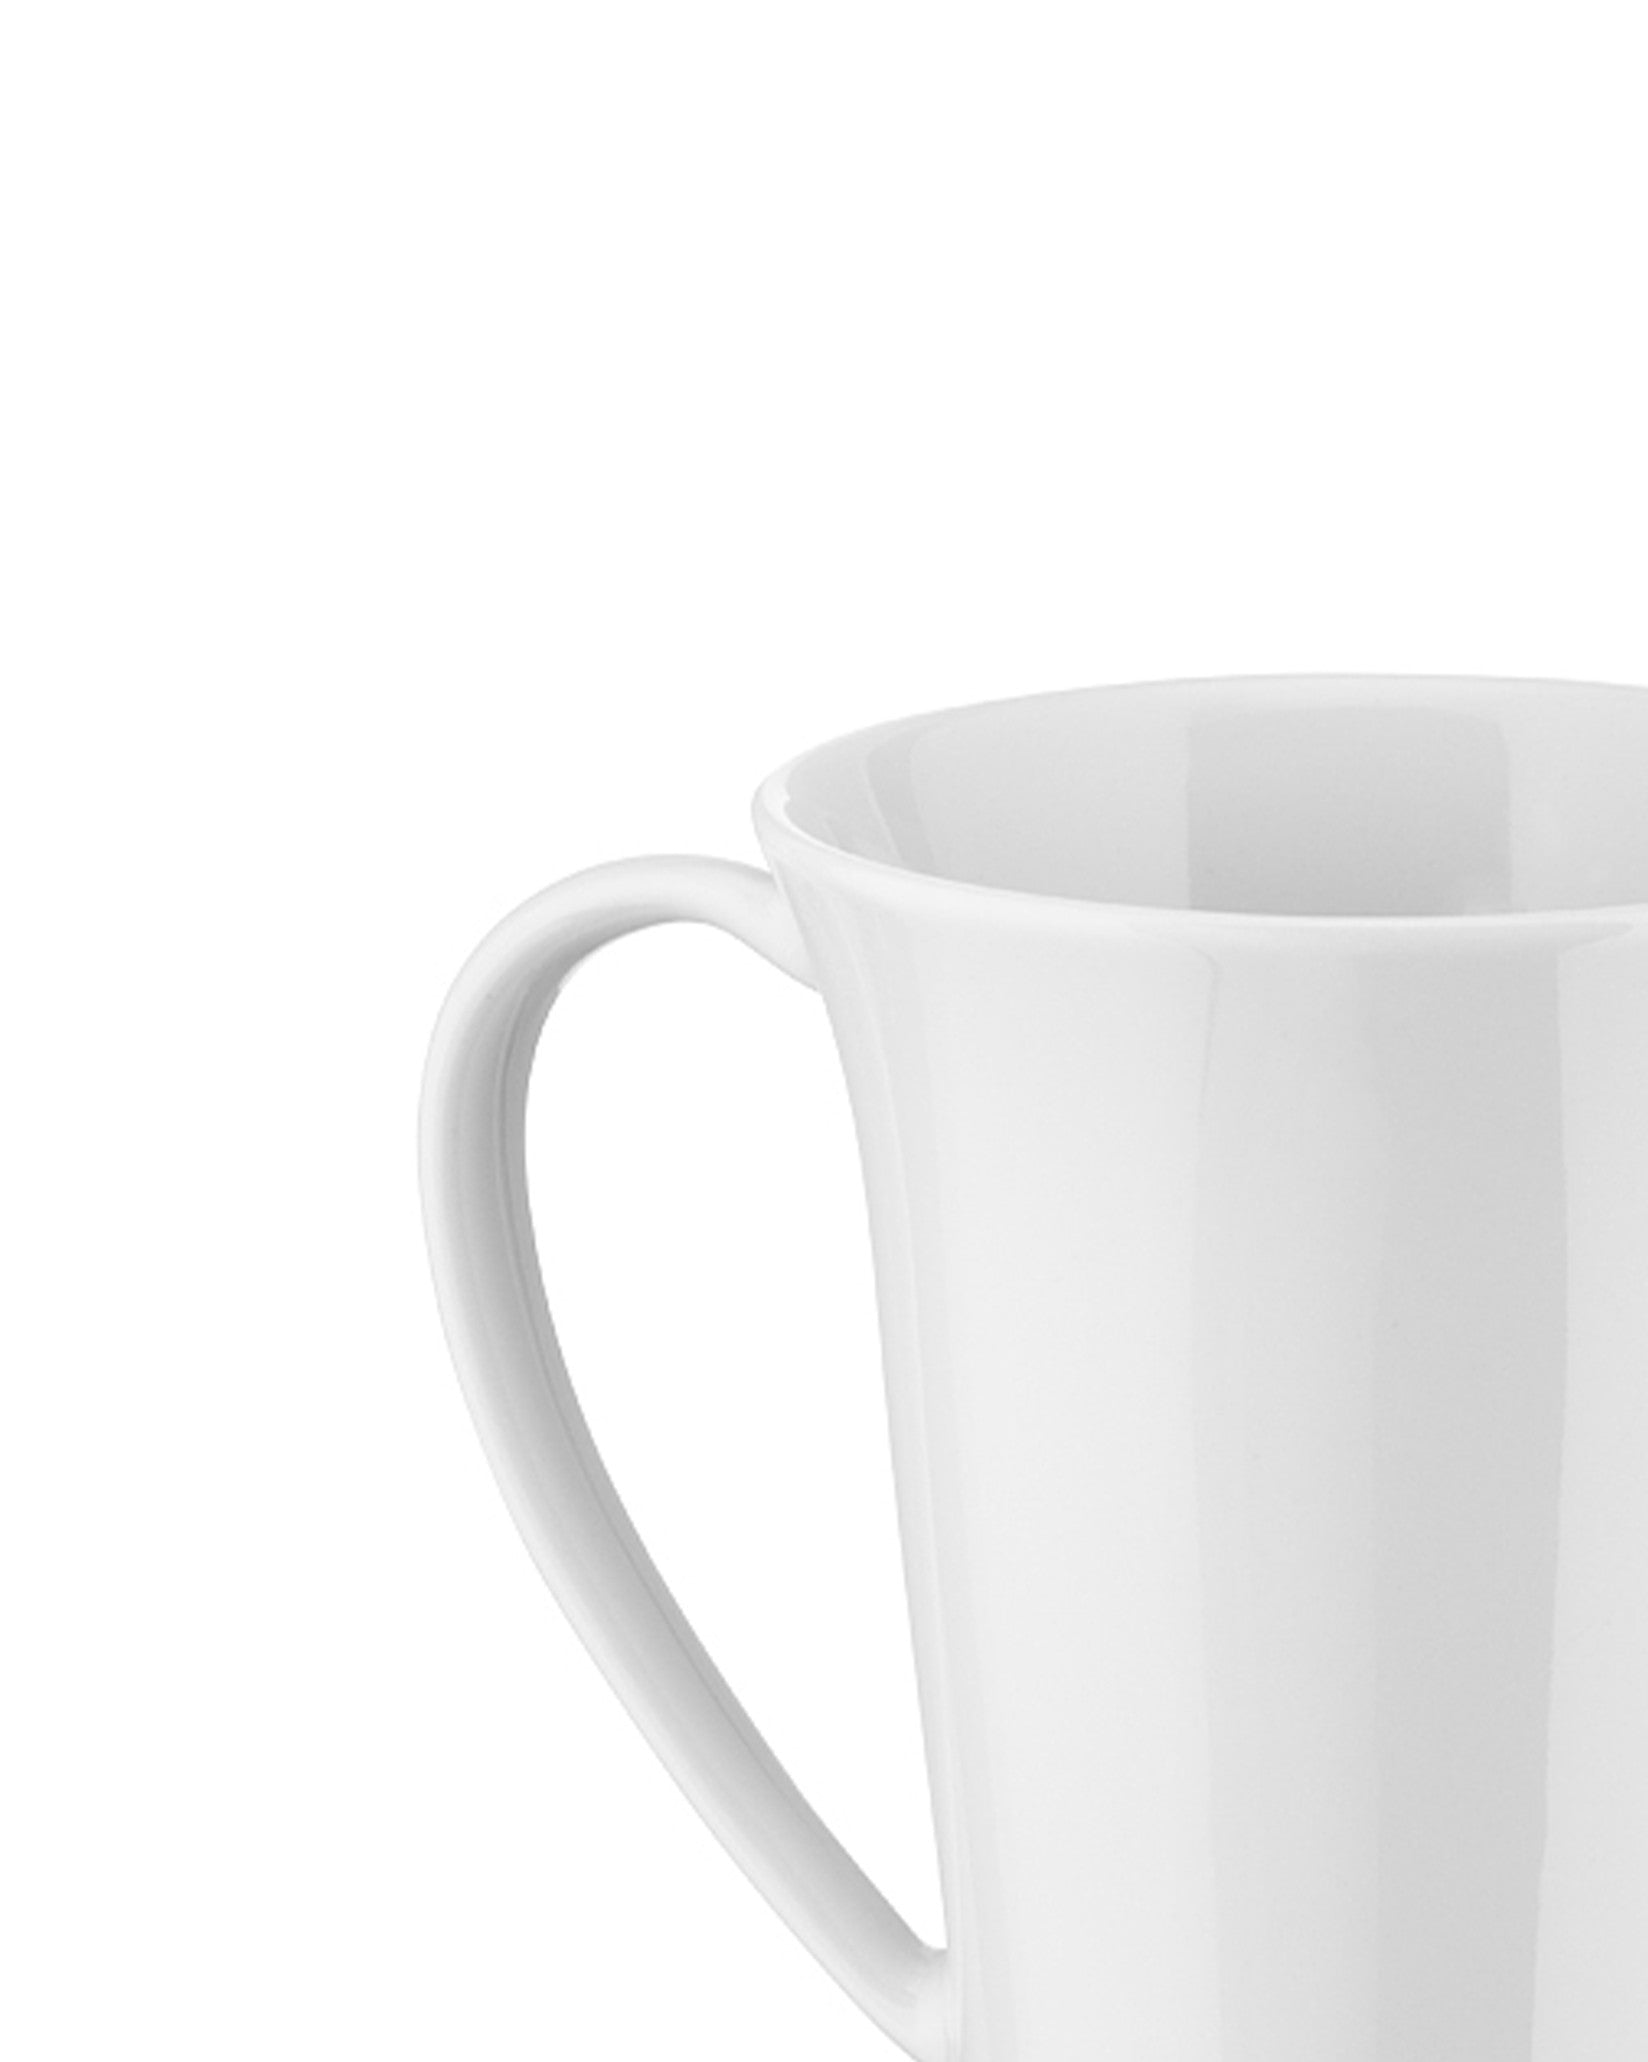 KU - Mug. 4 pieces – Alessi USA Inc